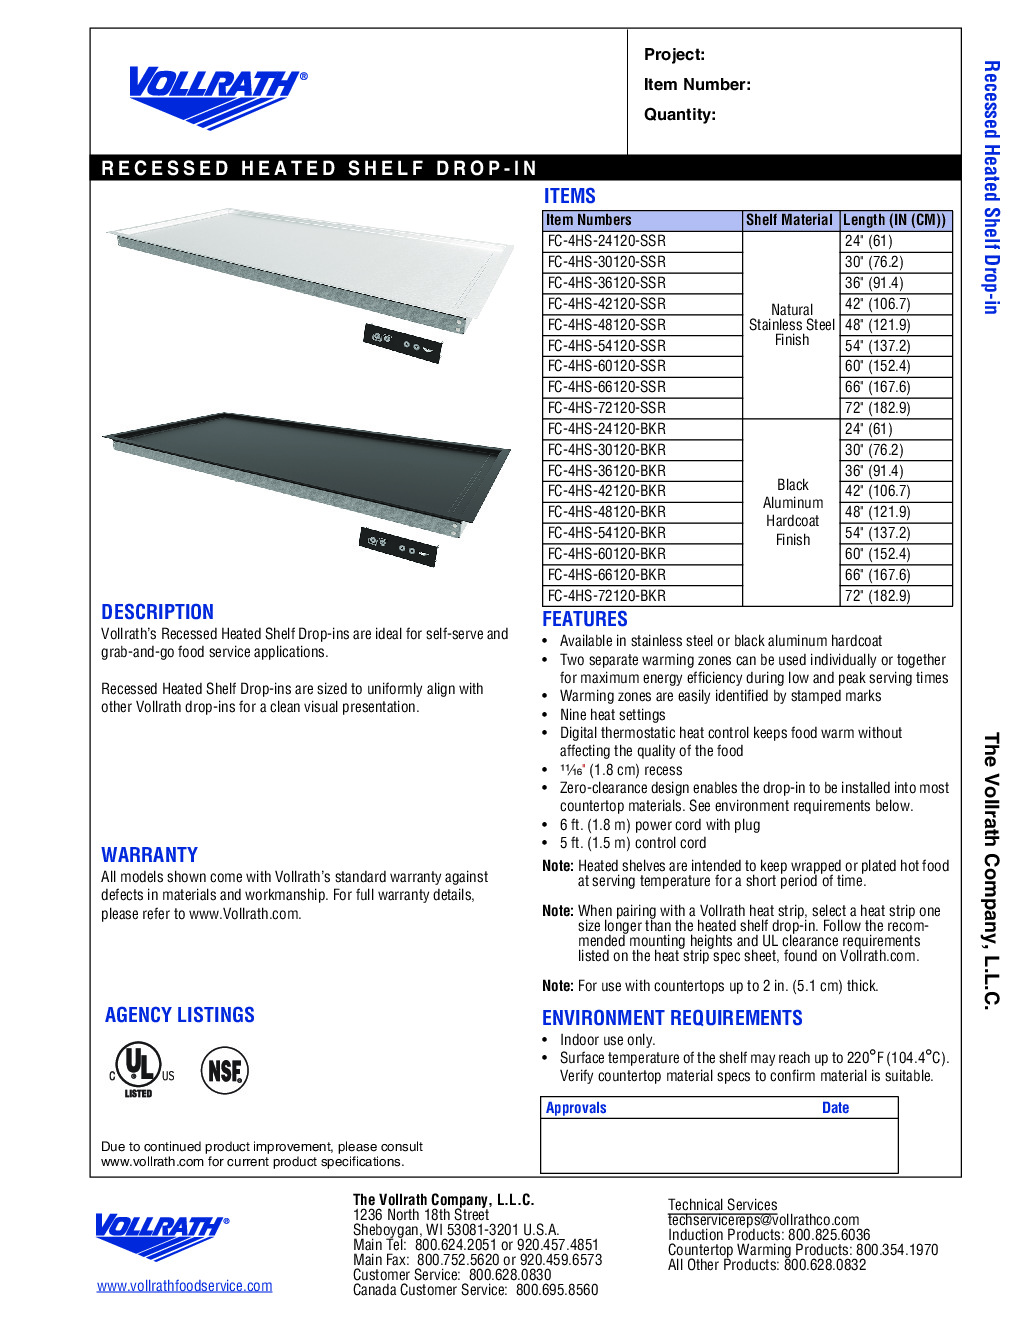 Vollrath FC-4HS-42120-BKR Heated Shelf Food Warmer